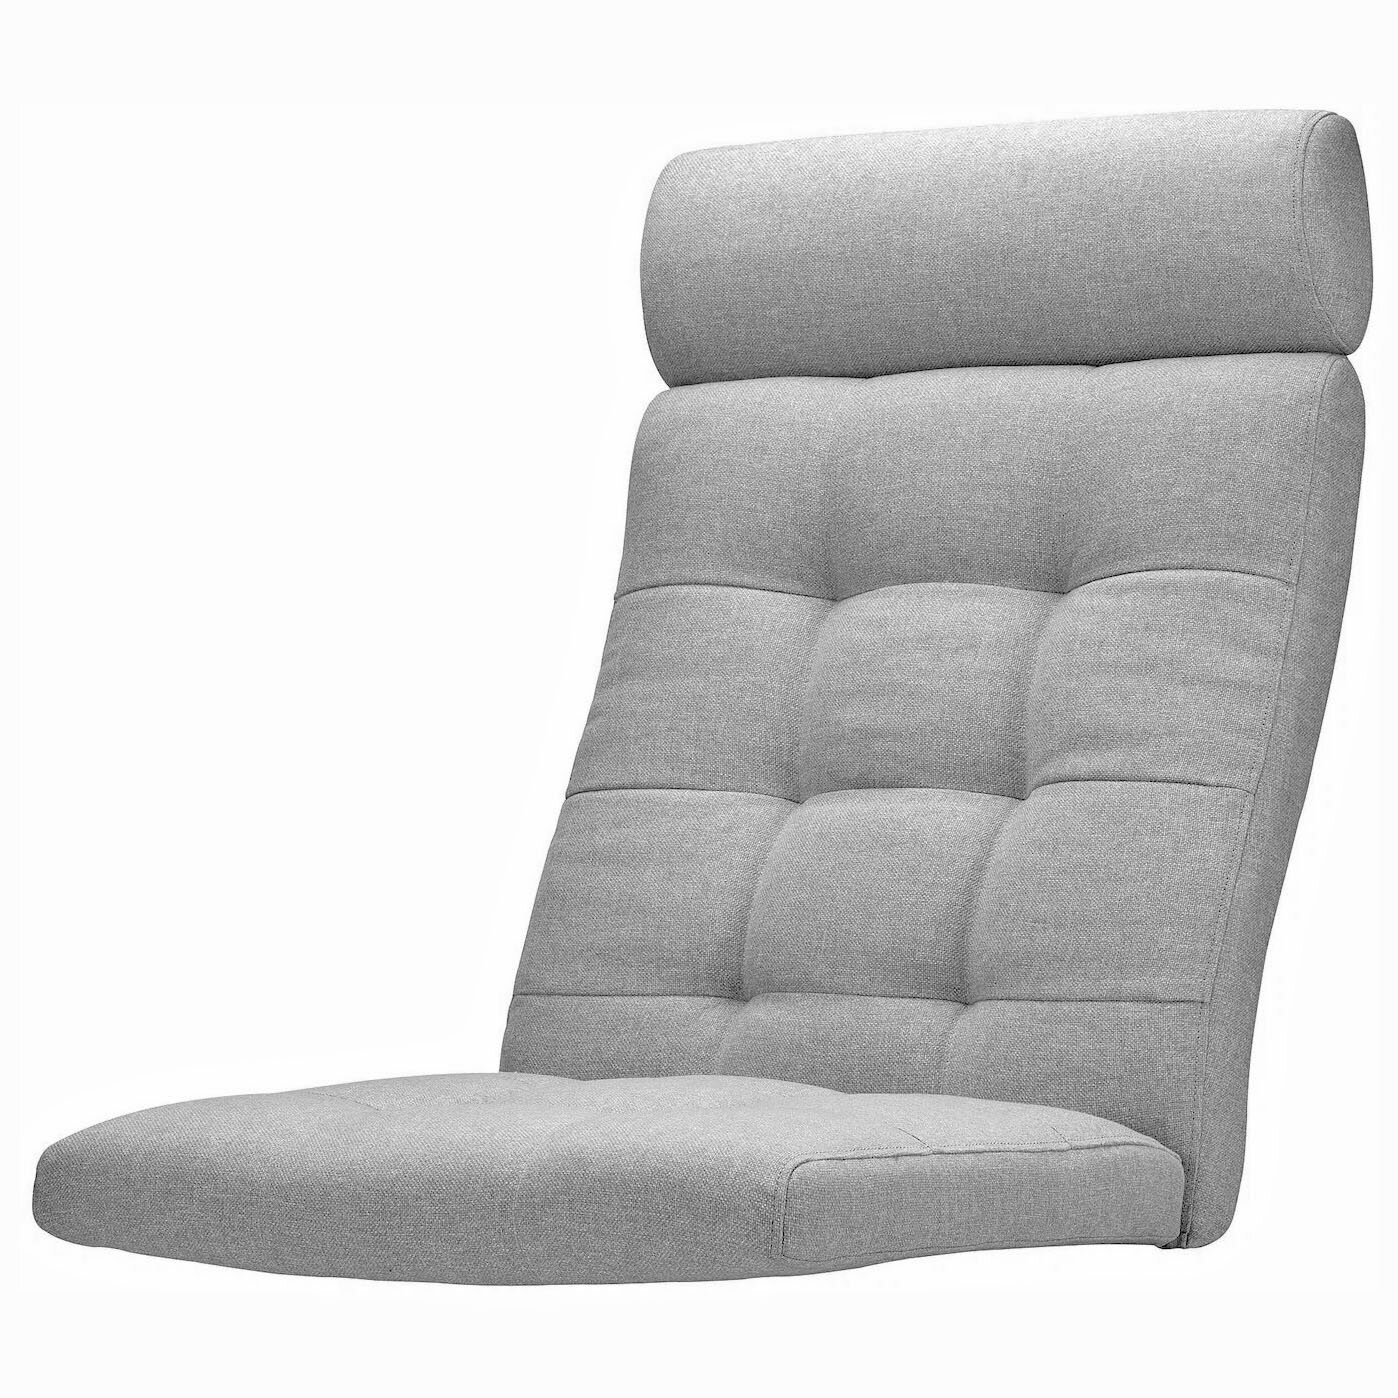 Подушка / матрас сиденья (съемный) на липучках для каркаса кресла поэнг POANG икеа, толщина 9 см, серый светло-серый